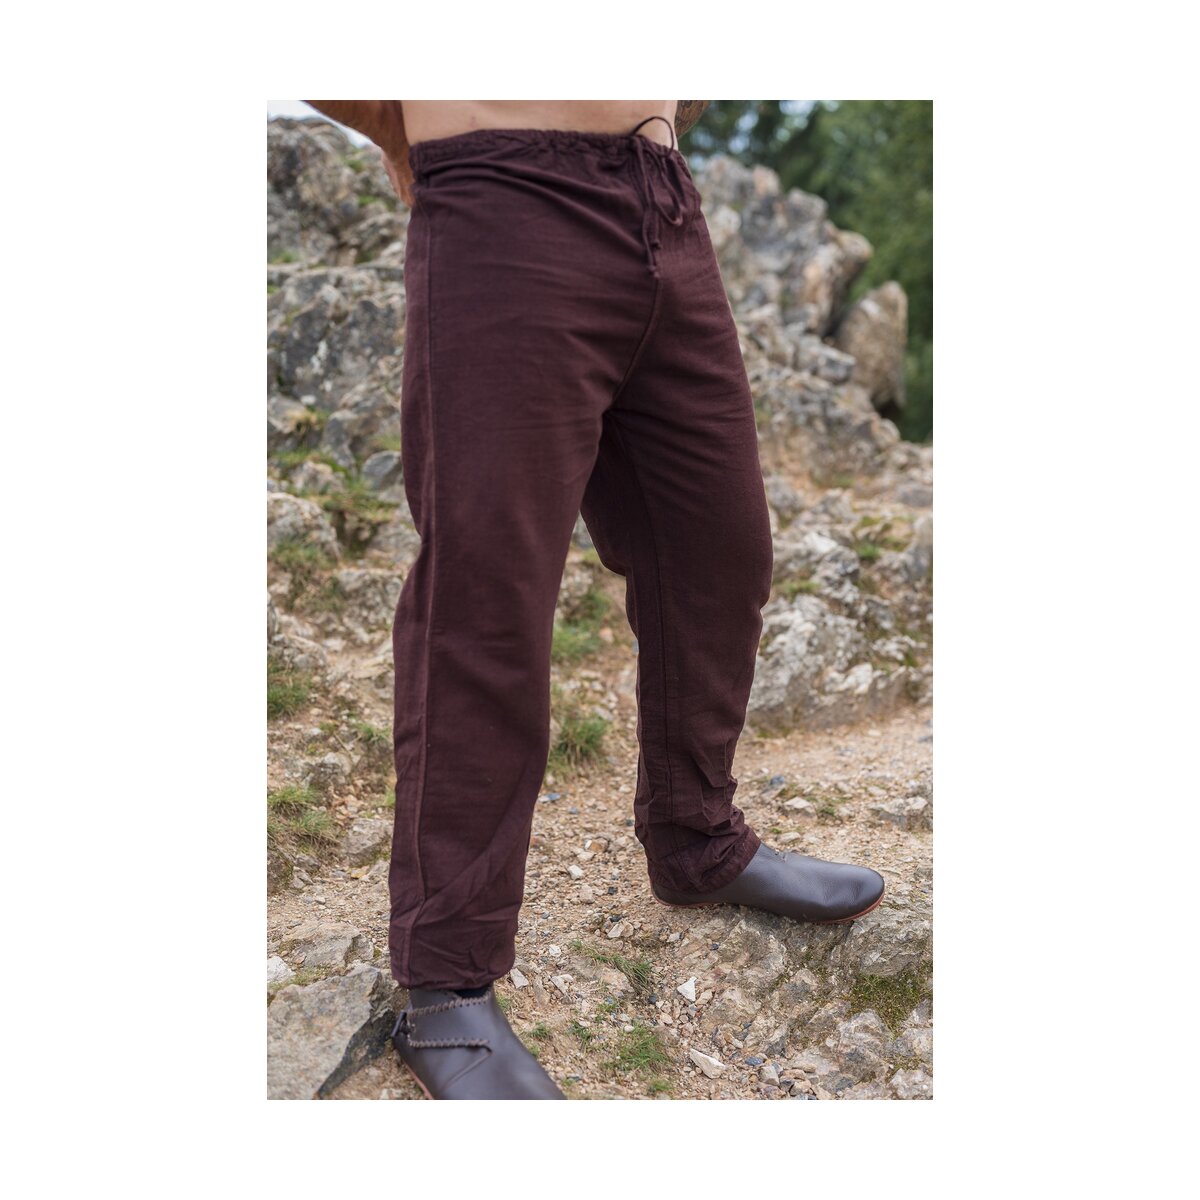 Linen trousers "Asmund" dark brown